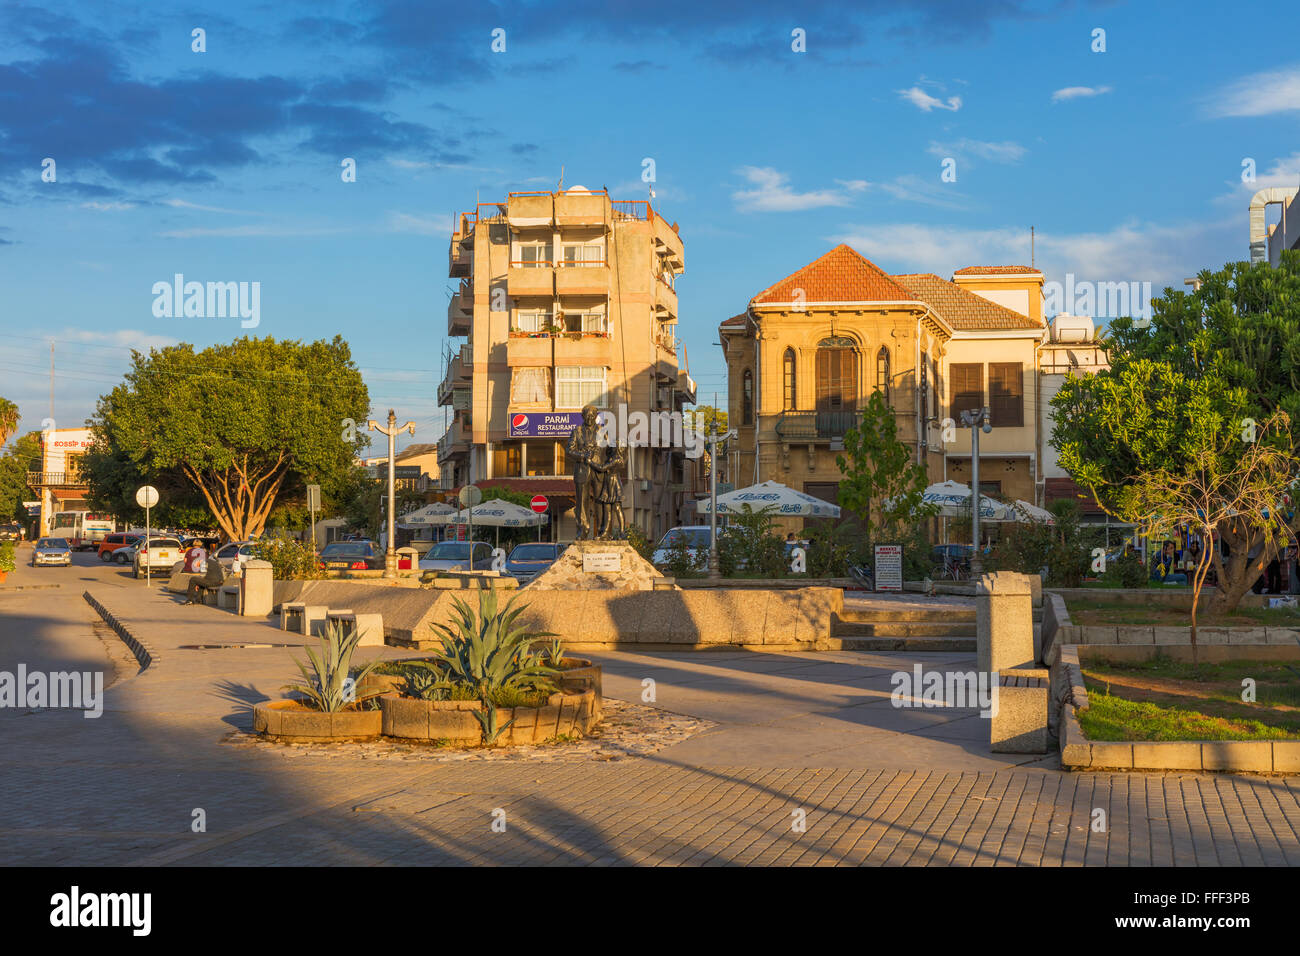 Street dans la vieille ville, le nord de Nicosie, Chypre du Nord Banque D'Images